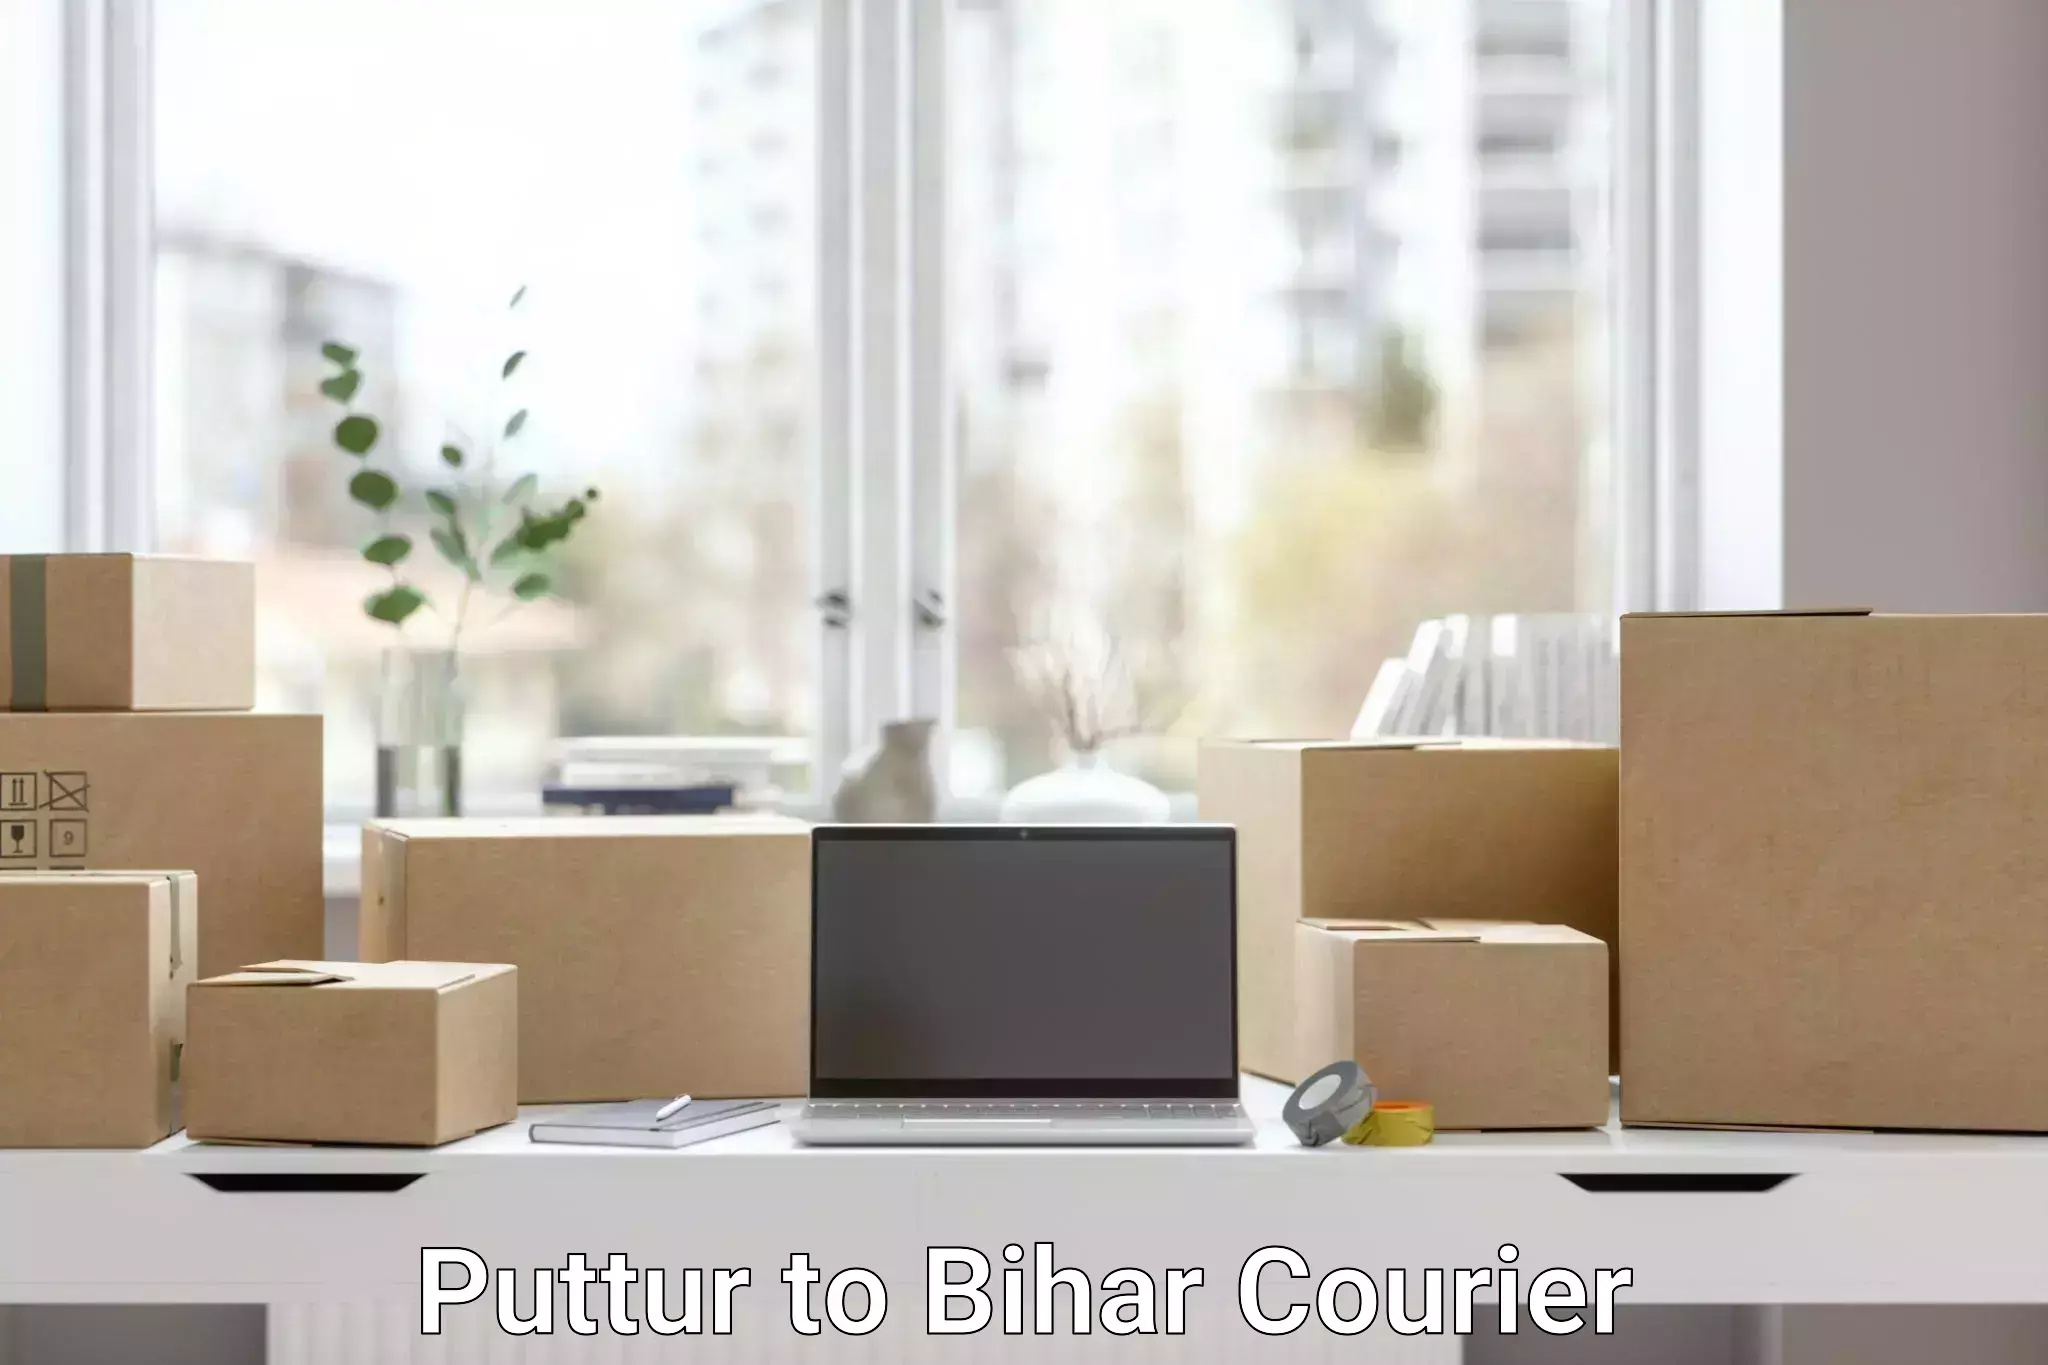 Smart logistics strategies Puttur to Bihar